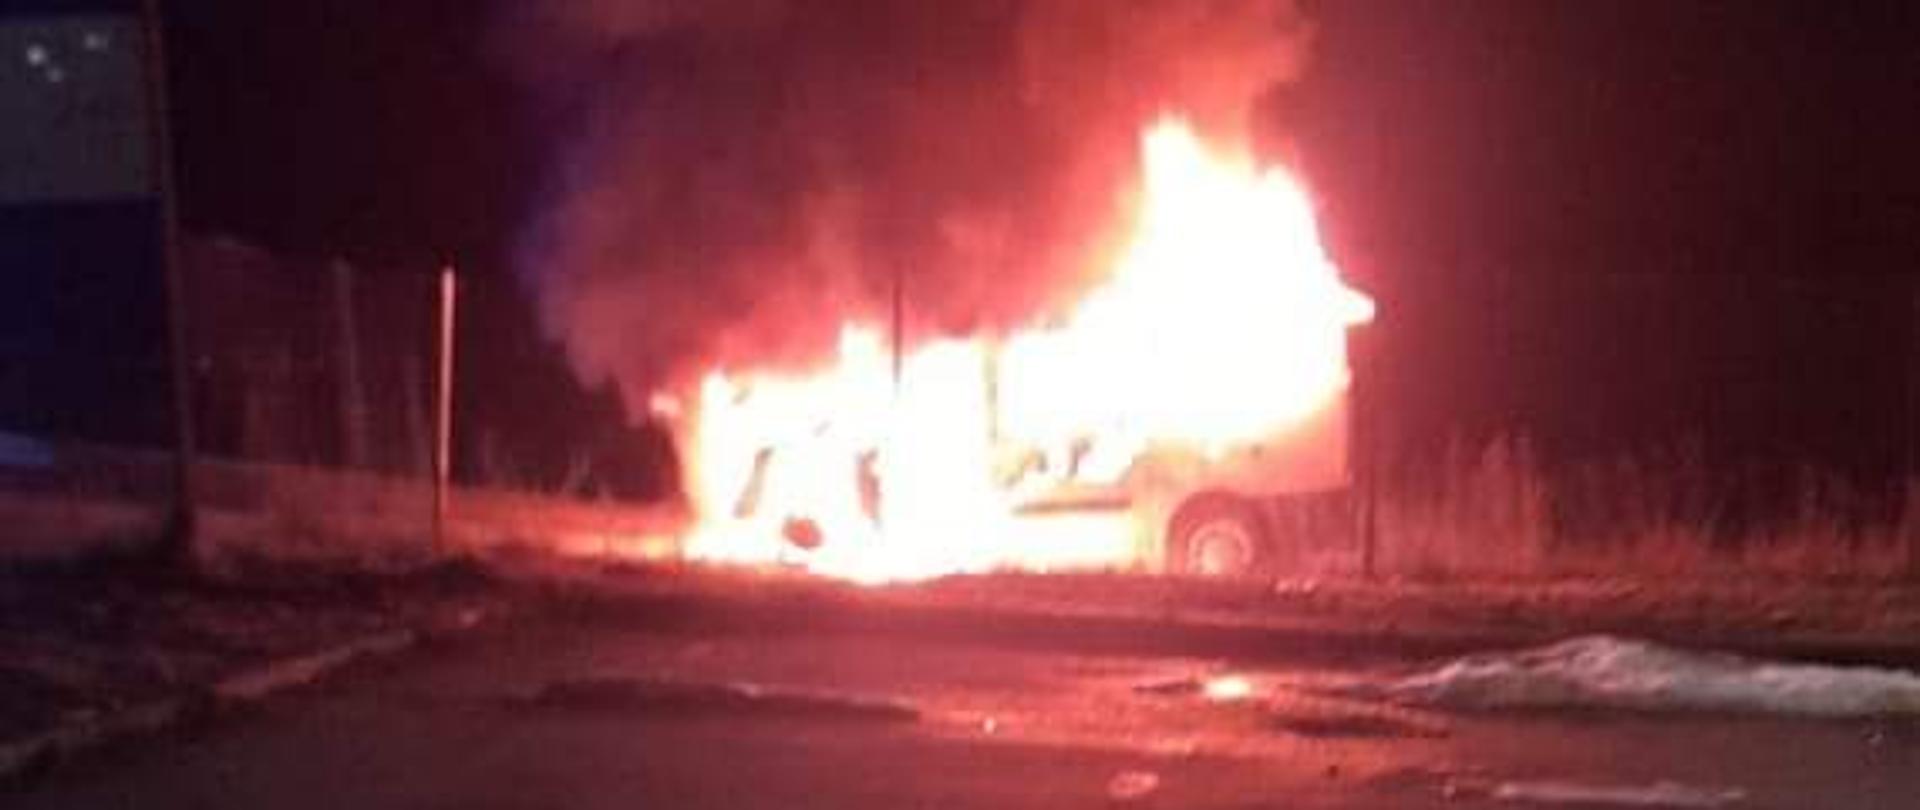 Zdjęcie obrazuje palący się samochód w nocy.